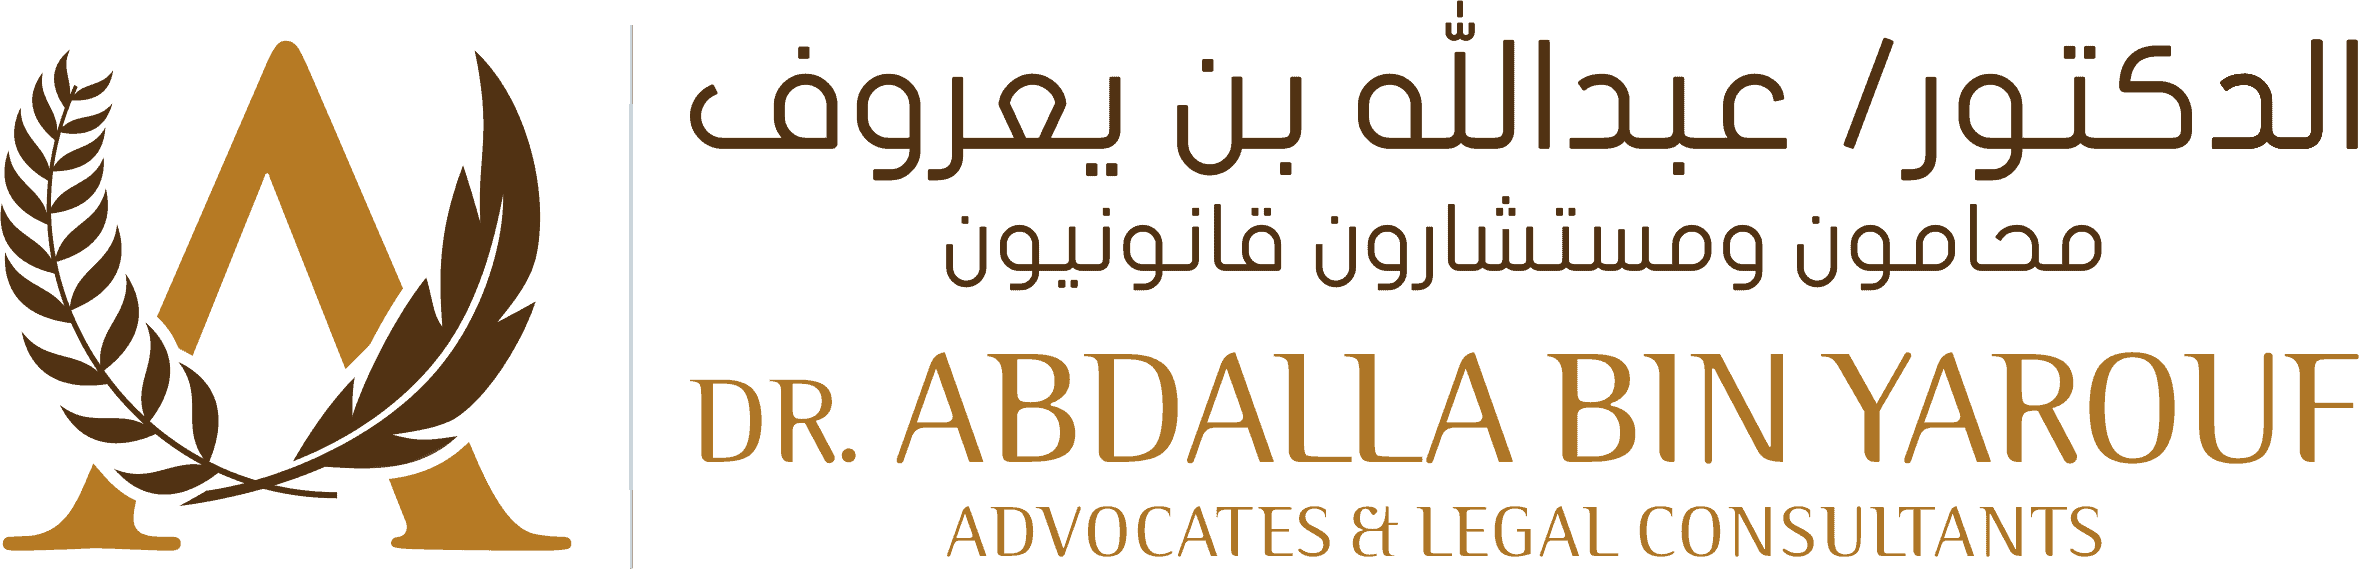 Dr. Abdulla Bin Yarouf - Advocates & Legal Consultants